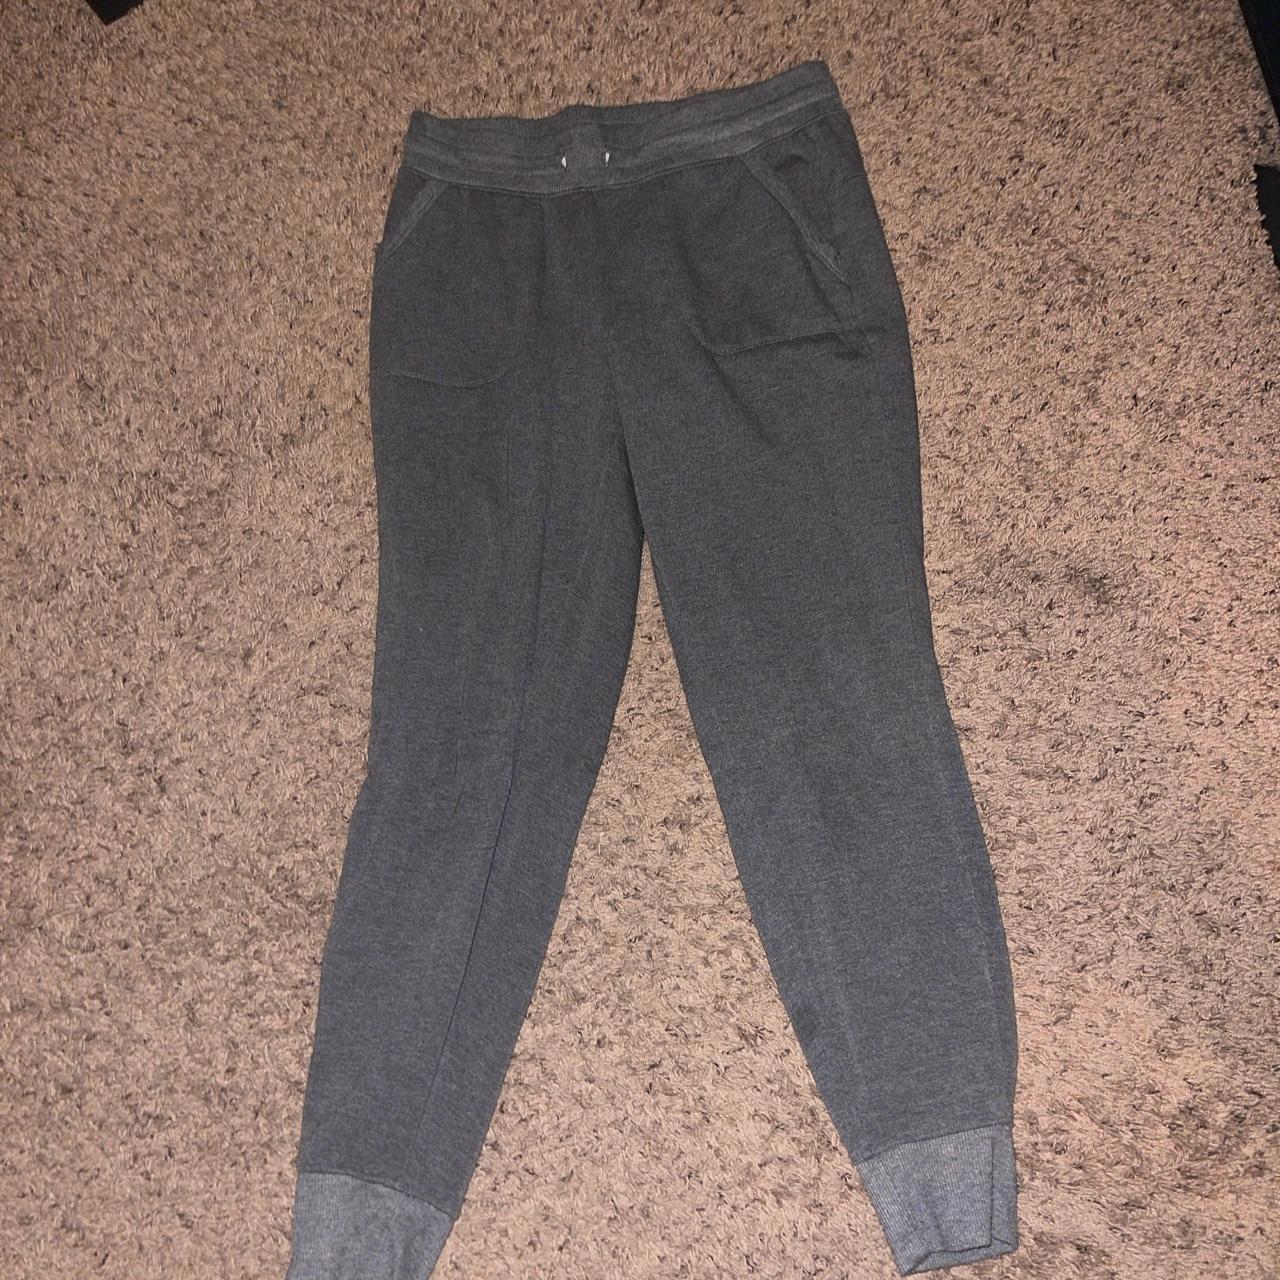 grey fuzzy sweatpants with pockets -size S(4-6) - Depop